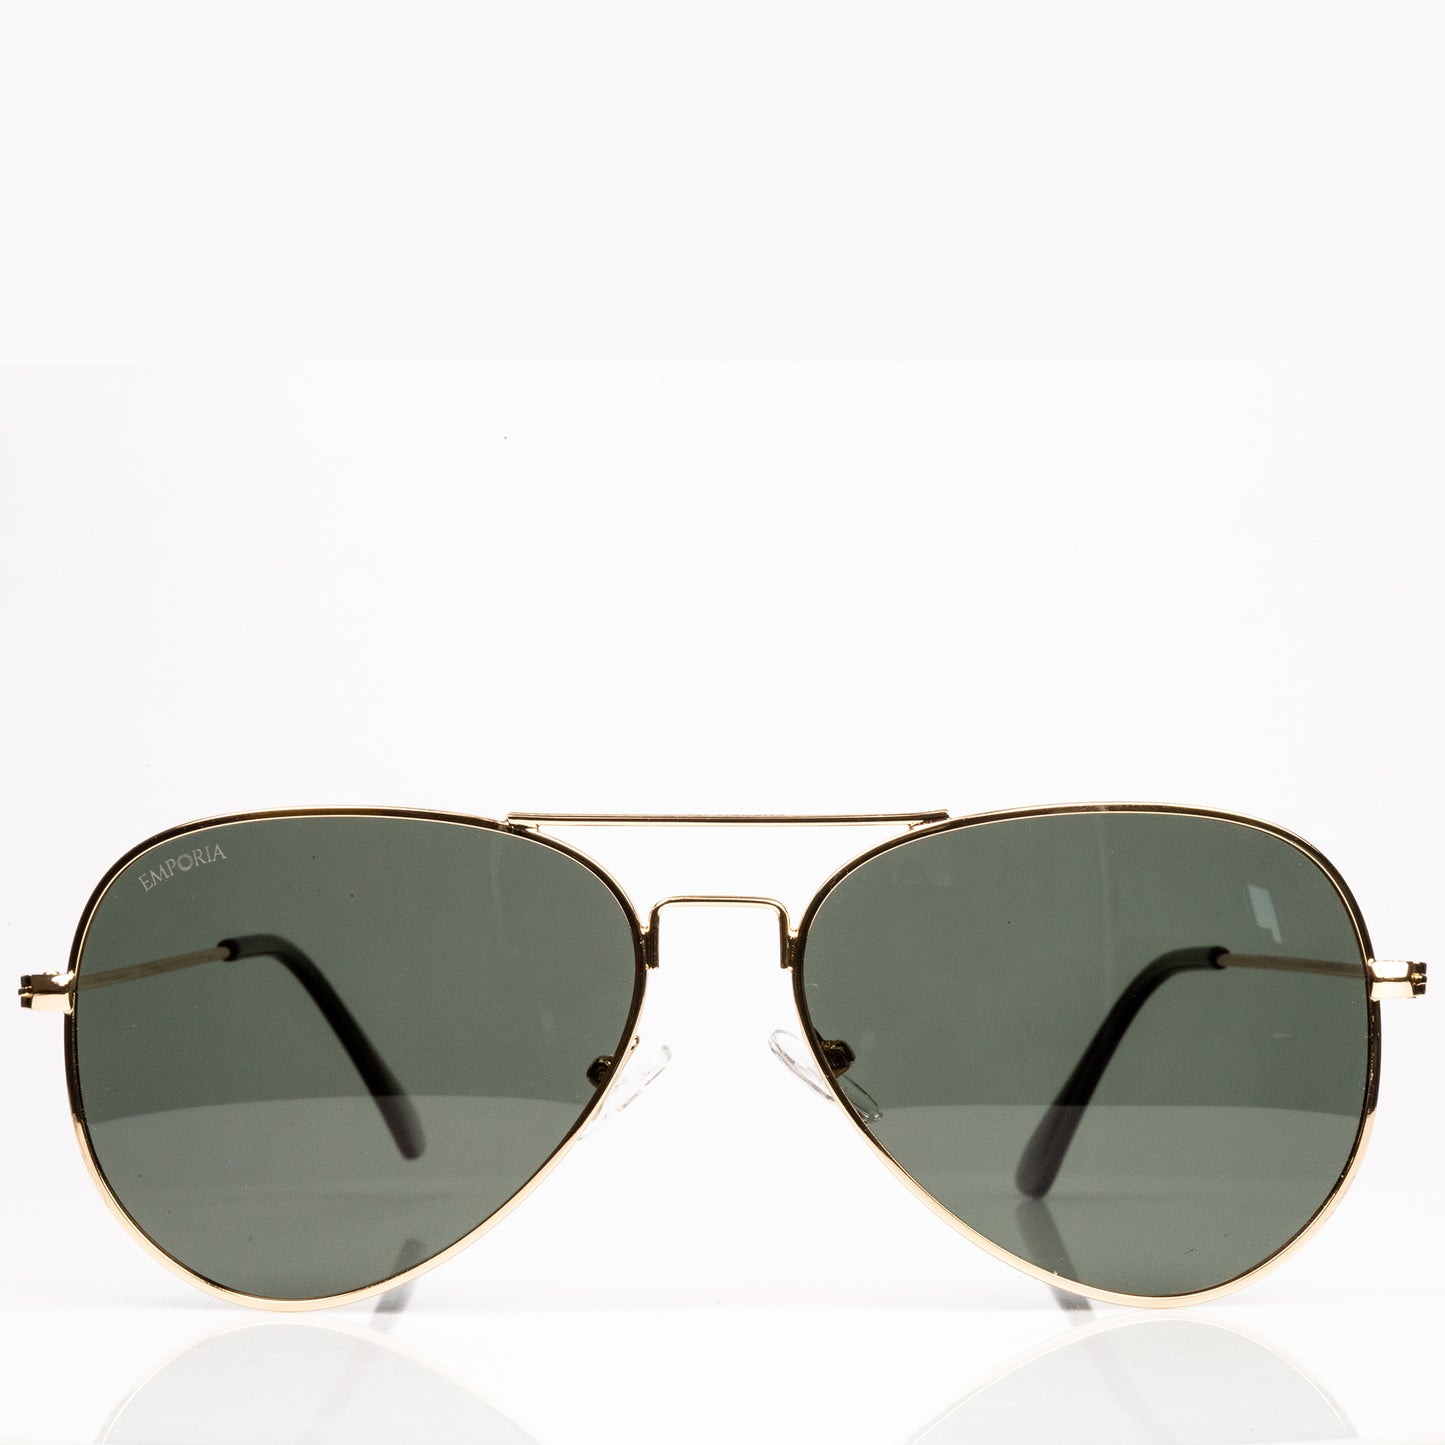 Emporia Itália - Óculos de sol Aviator "ORIGINAL", óculos de sol com filtro UV polarizados com estojo rígido e pano de limpeza, lente clássica verde escuro, armação dourada